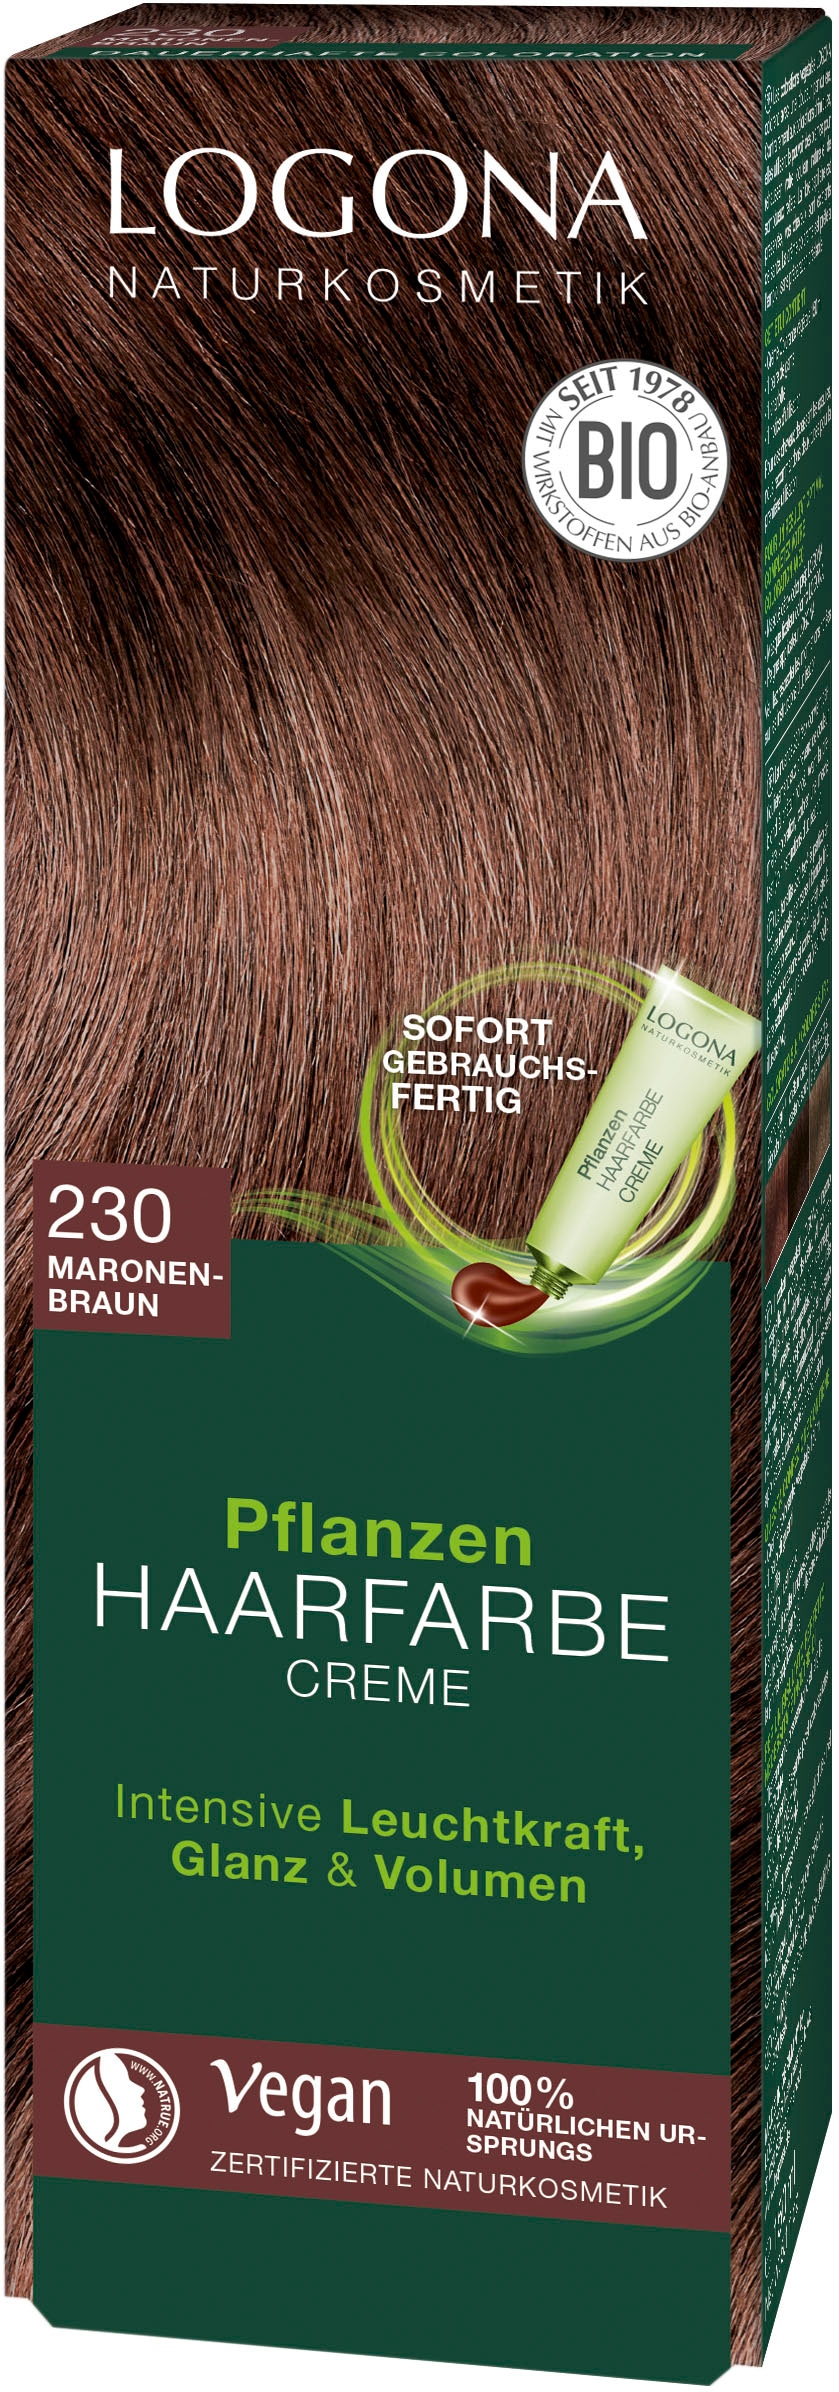 Pflanzen-Haarfarbe Haarfarbe 3 Creme« LOGONA XXL Jahren mit Garantie »Logona